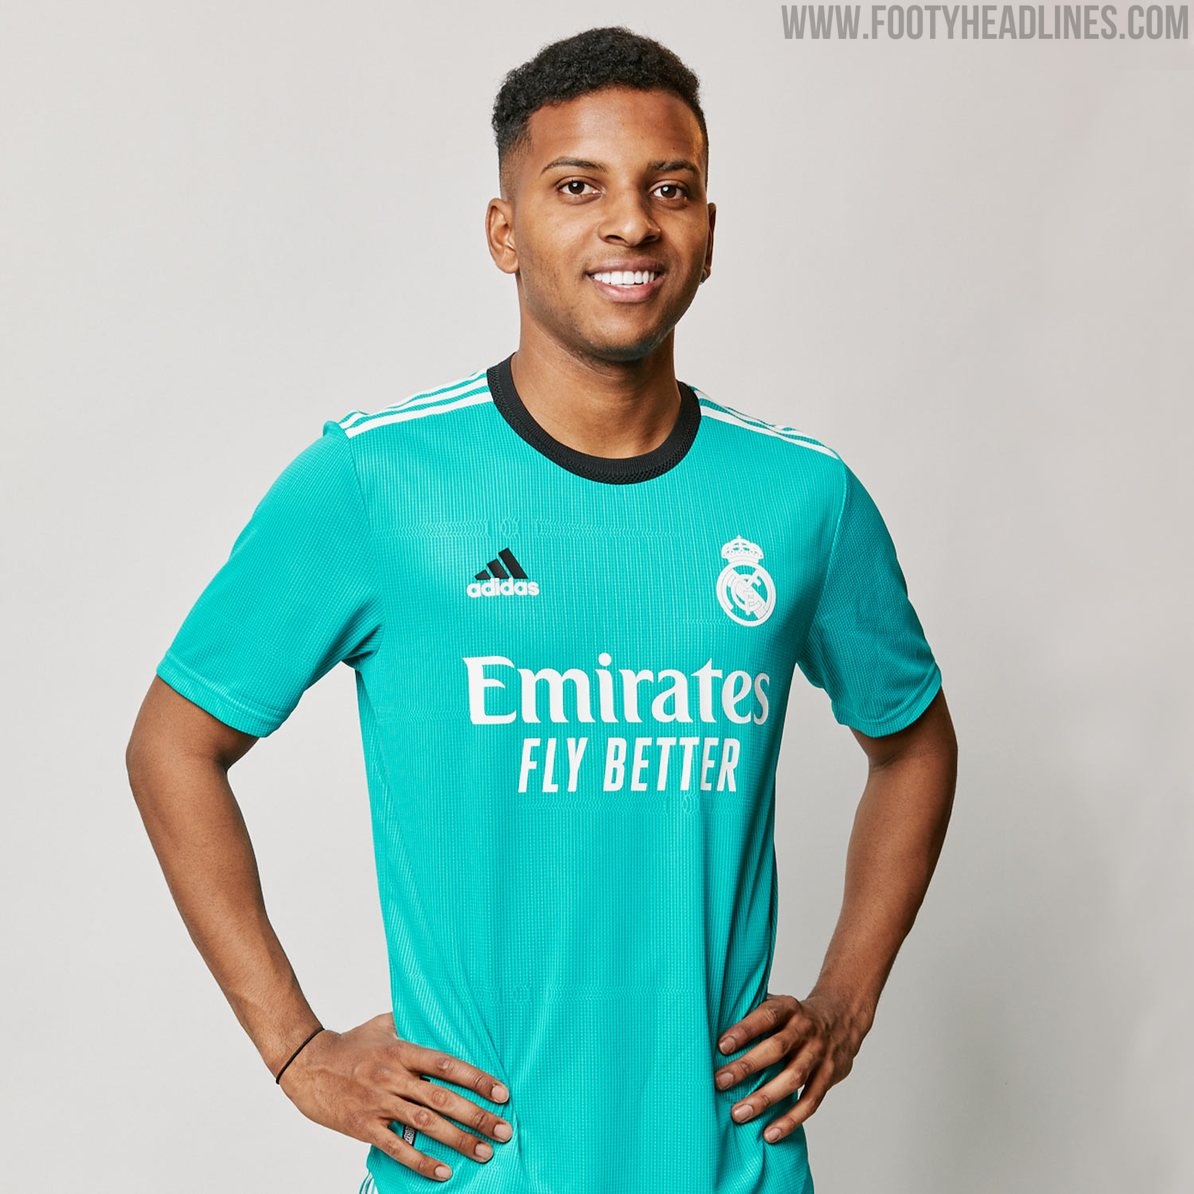 Real Madrid 21-22 Away Kit Released - Footy Headlines